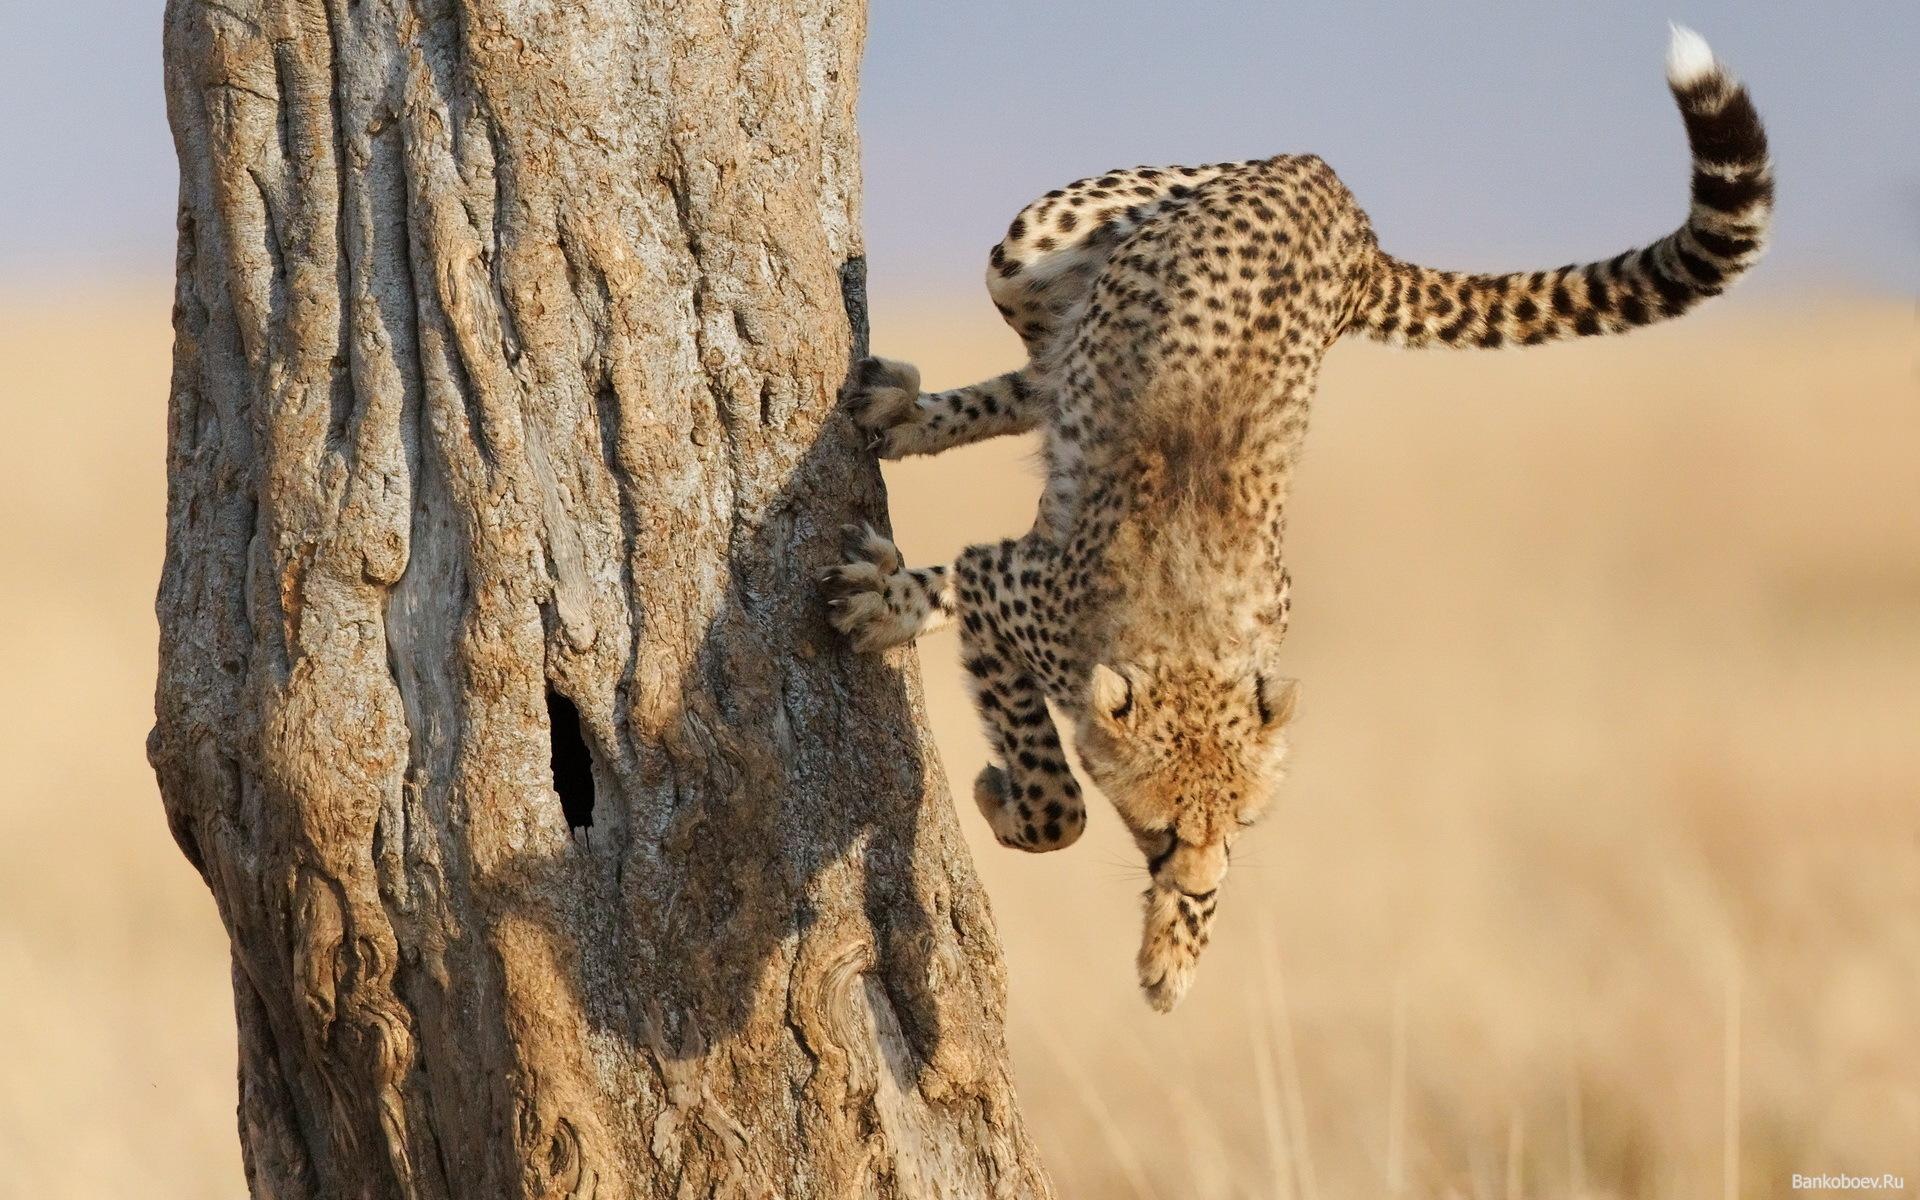 Photo of a cheetah in a jump